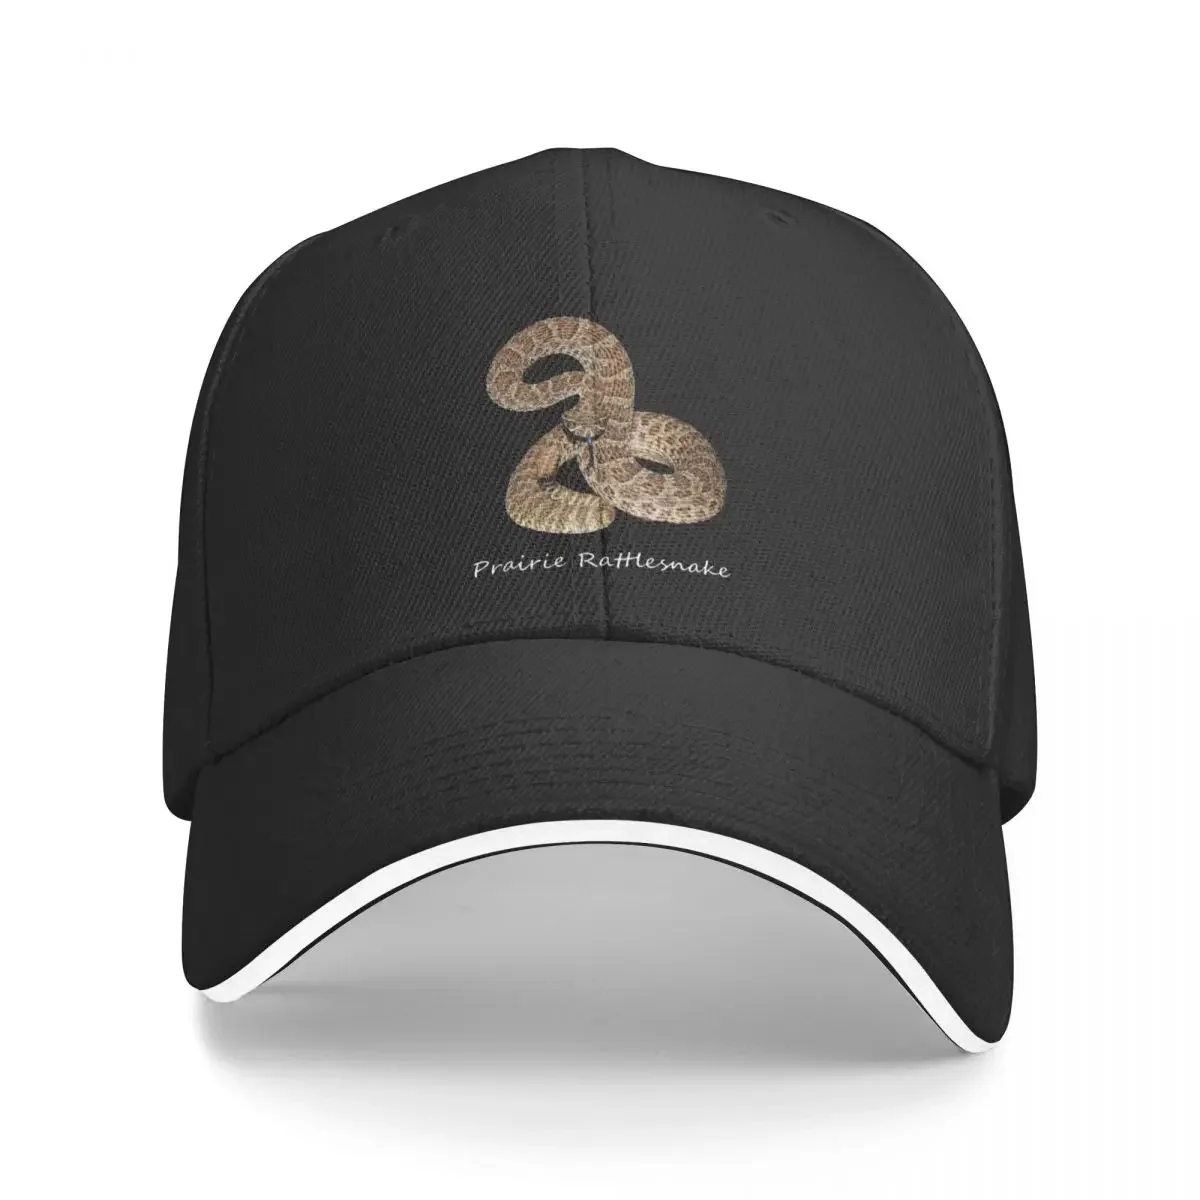 

New Prairie Rattlesnake Baseball Cap Hats Baseball Cap foam party hats Trucker Hats Sunscreen Baseball Cap Men Women's